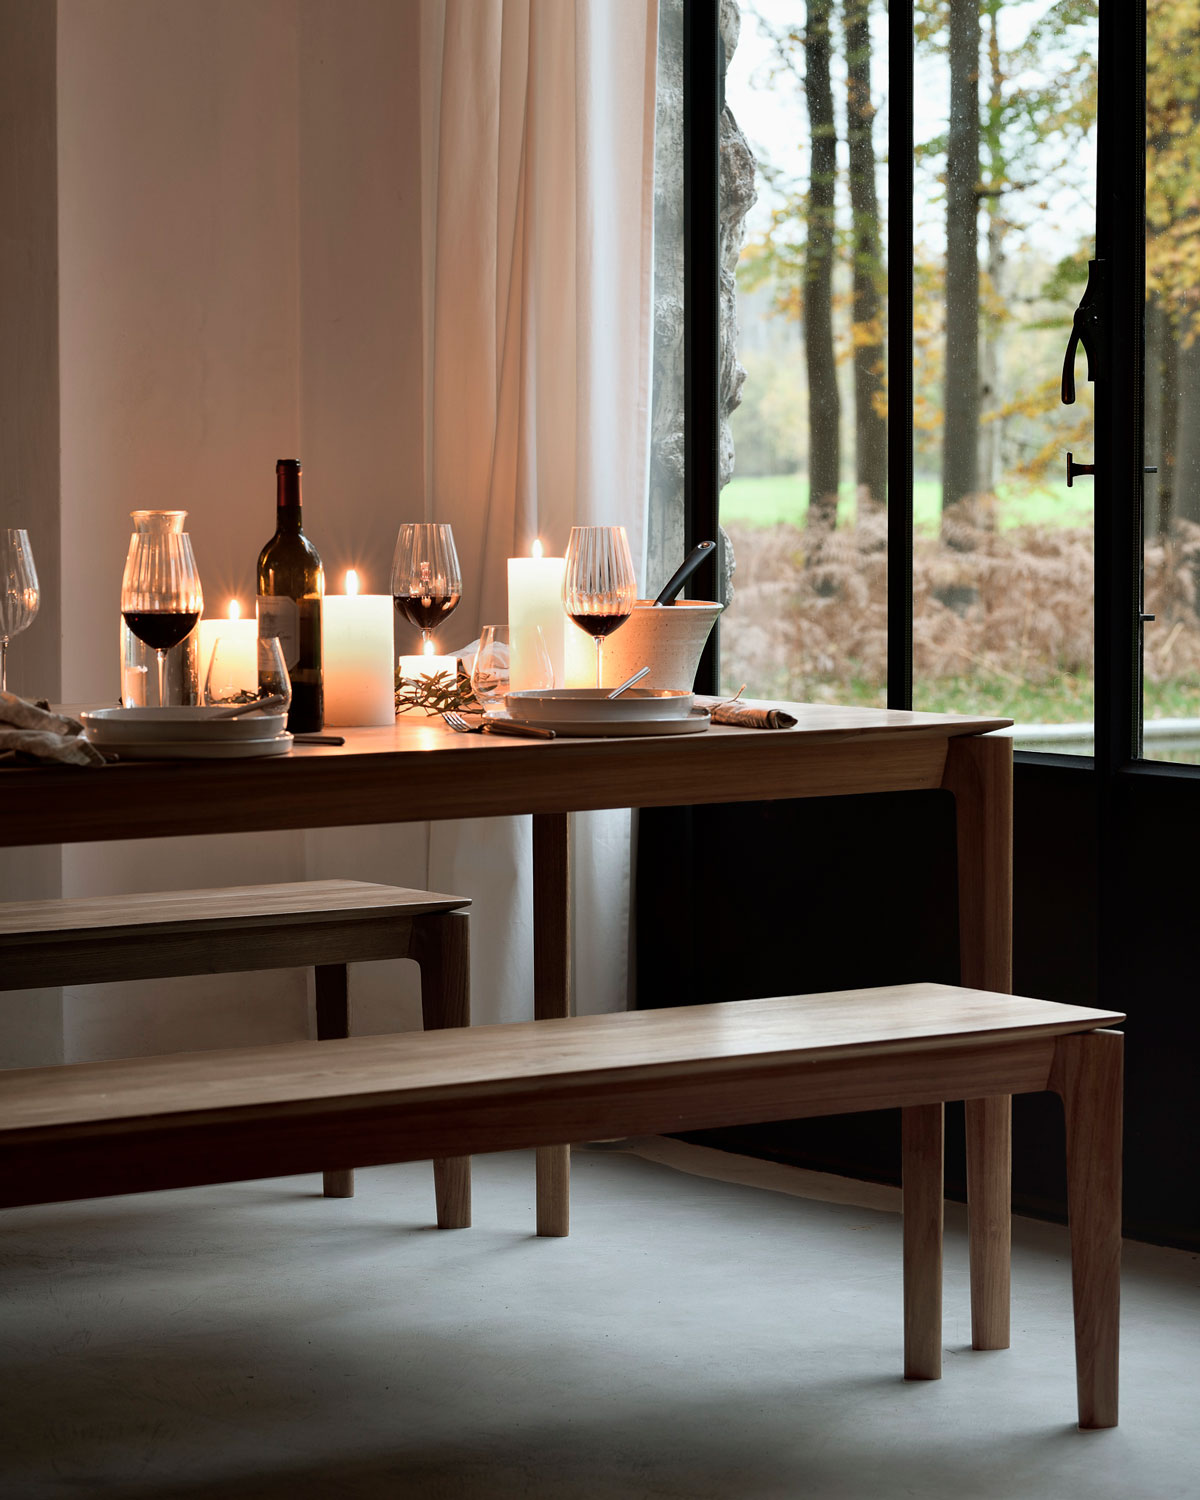 Bok Matbord och Bänk uppdukat med vin, vinglas och levande ljus med höstlandskap utanför fönstret